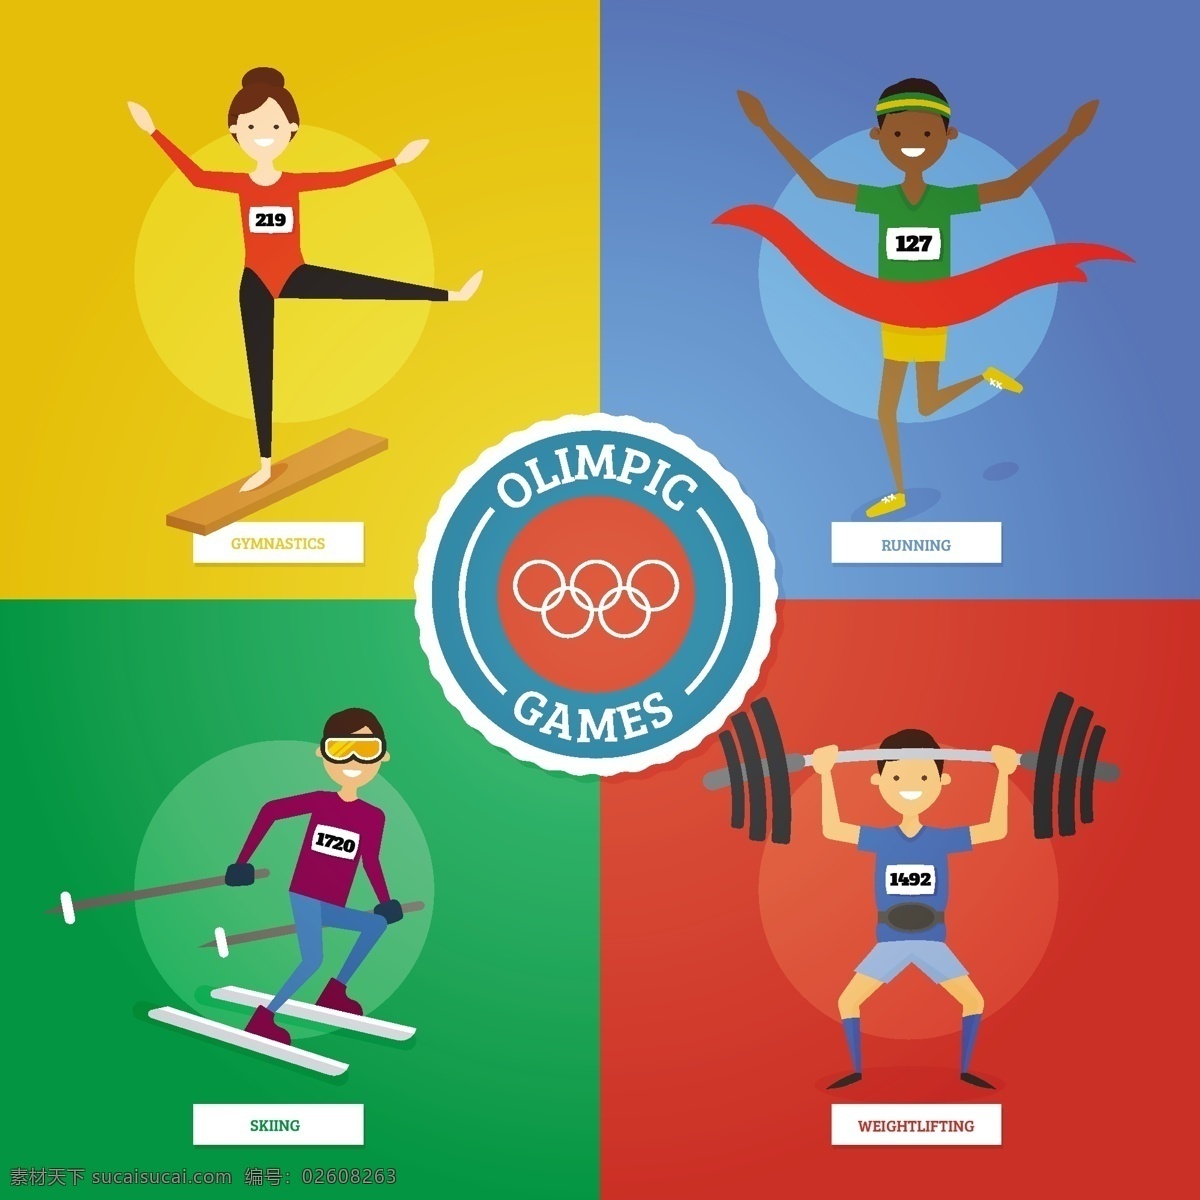 奥运会 准备 体育游戏 包装 人 夏季 手 运动 健身 健康 手绘 活动 2016 滑雪 跑步 训练 运动会 巴西 体重